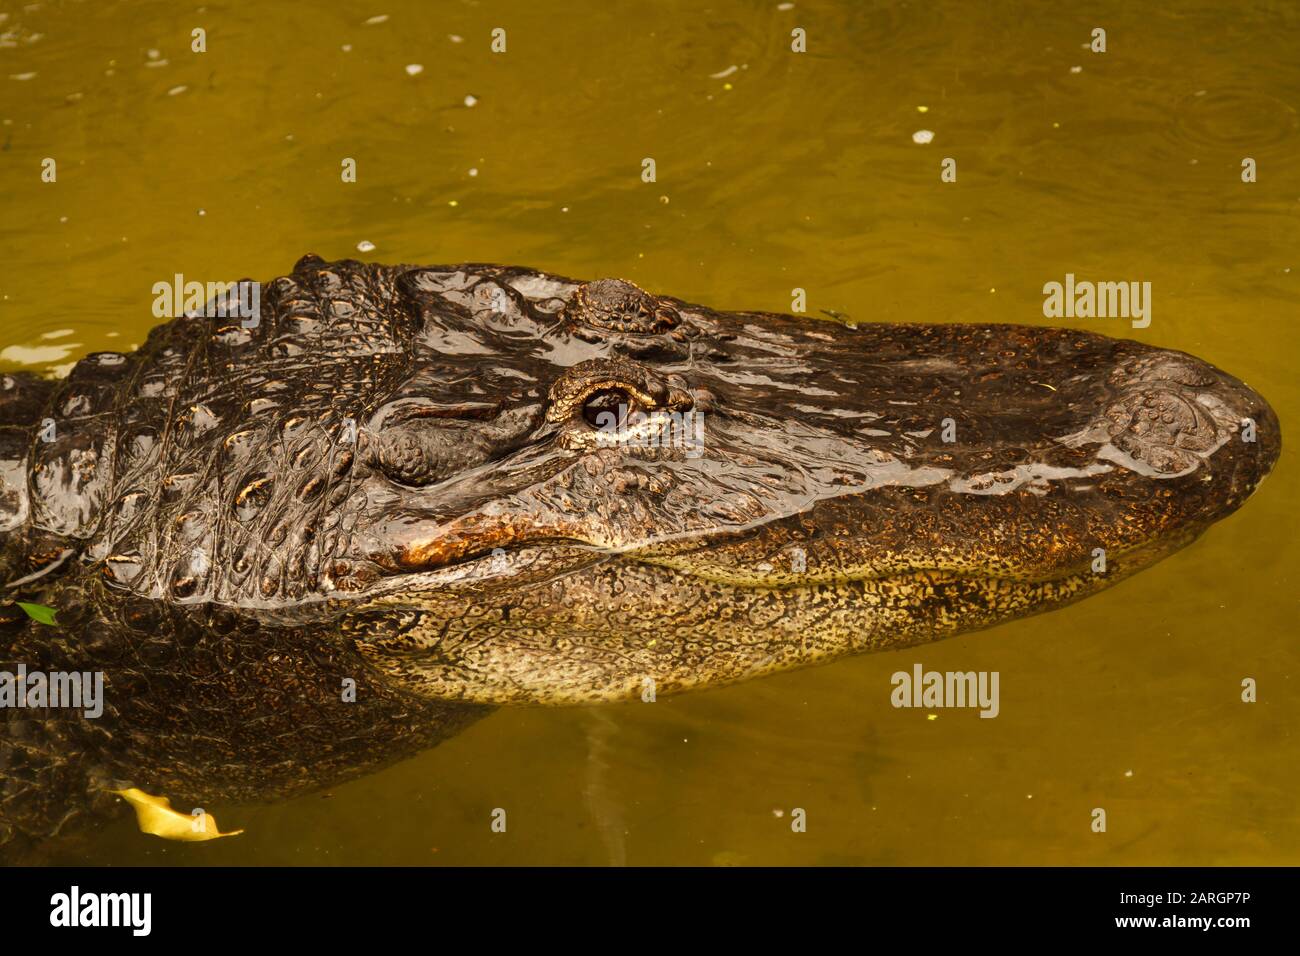 Amerikanischer Ausrichter lateinischer Name Alligator mississippiensis Stockfoto